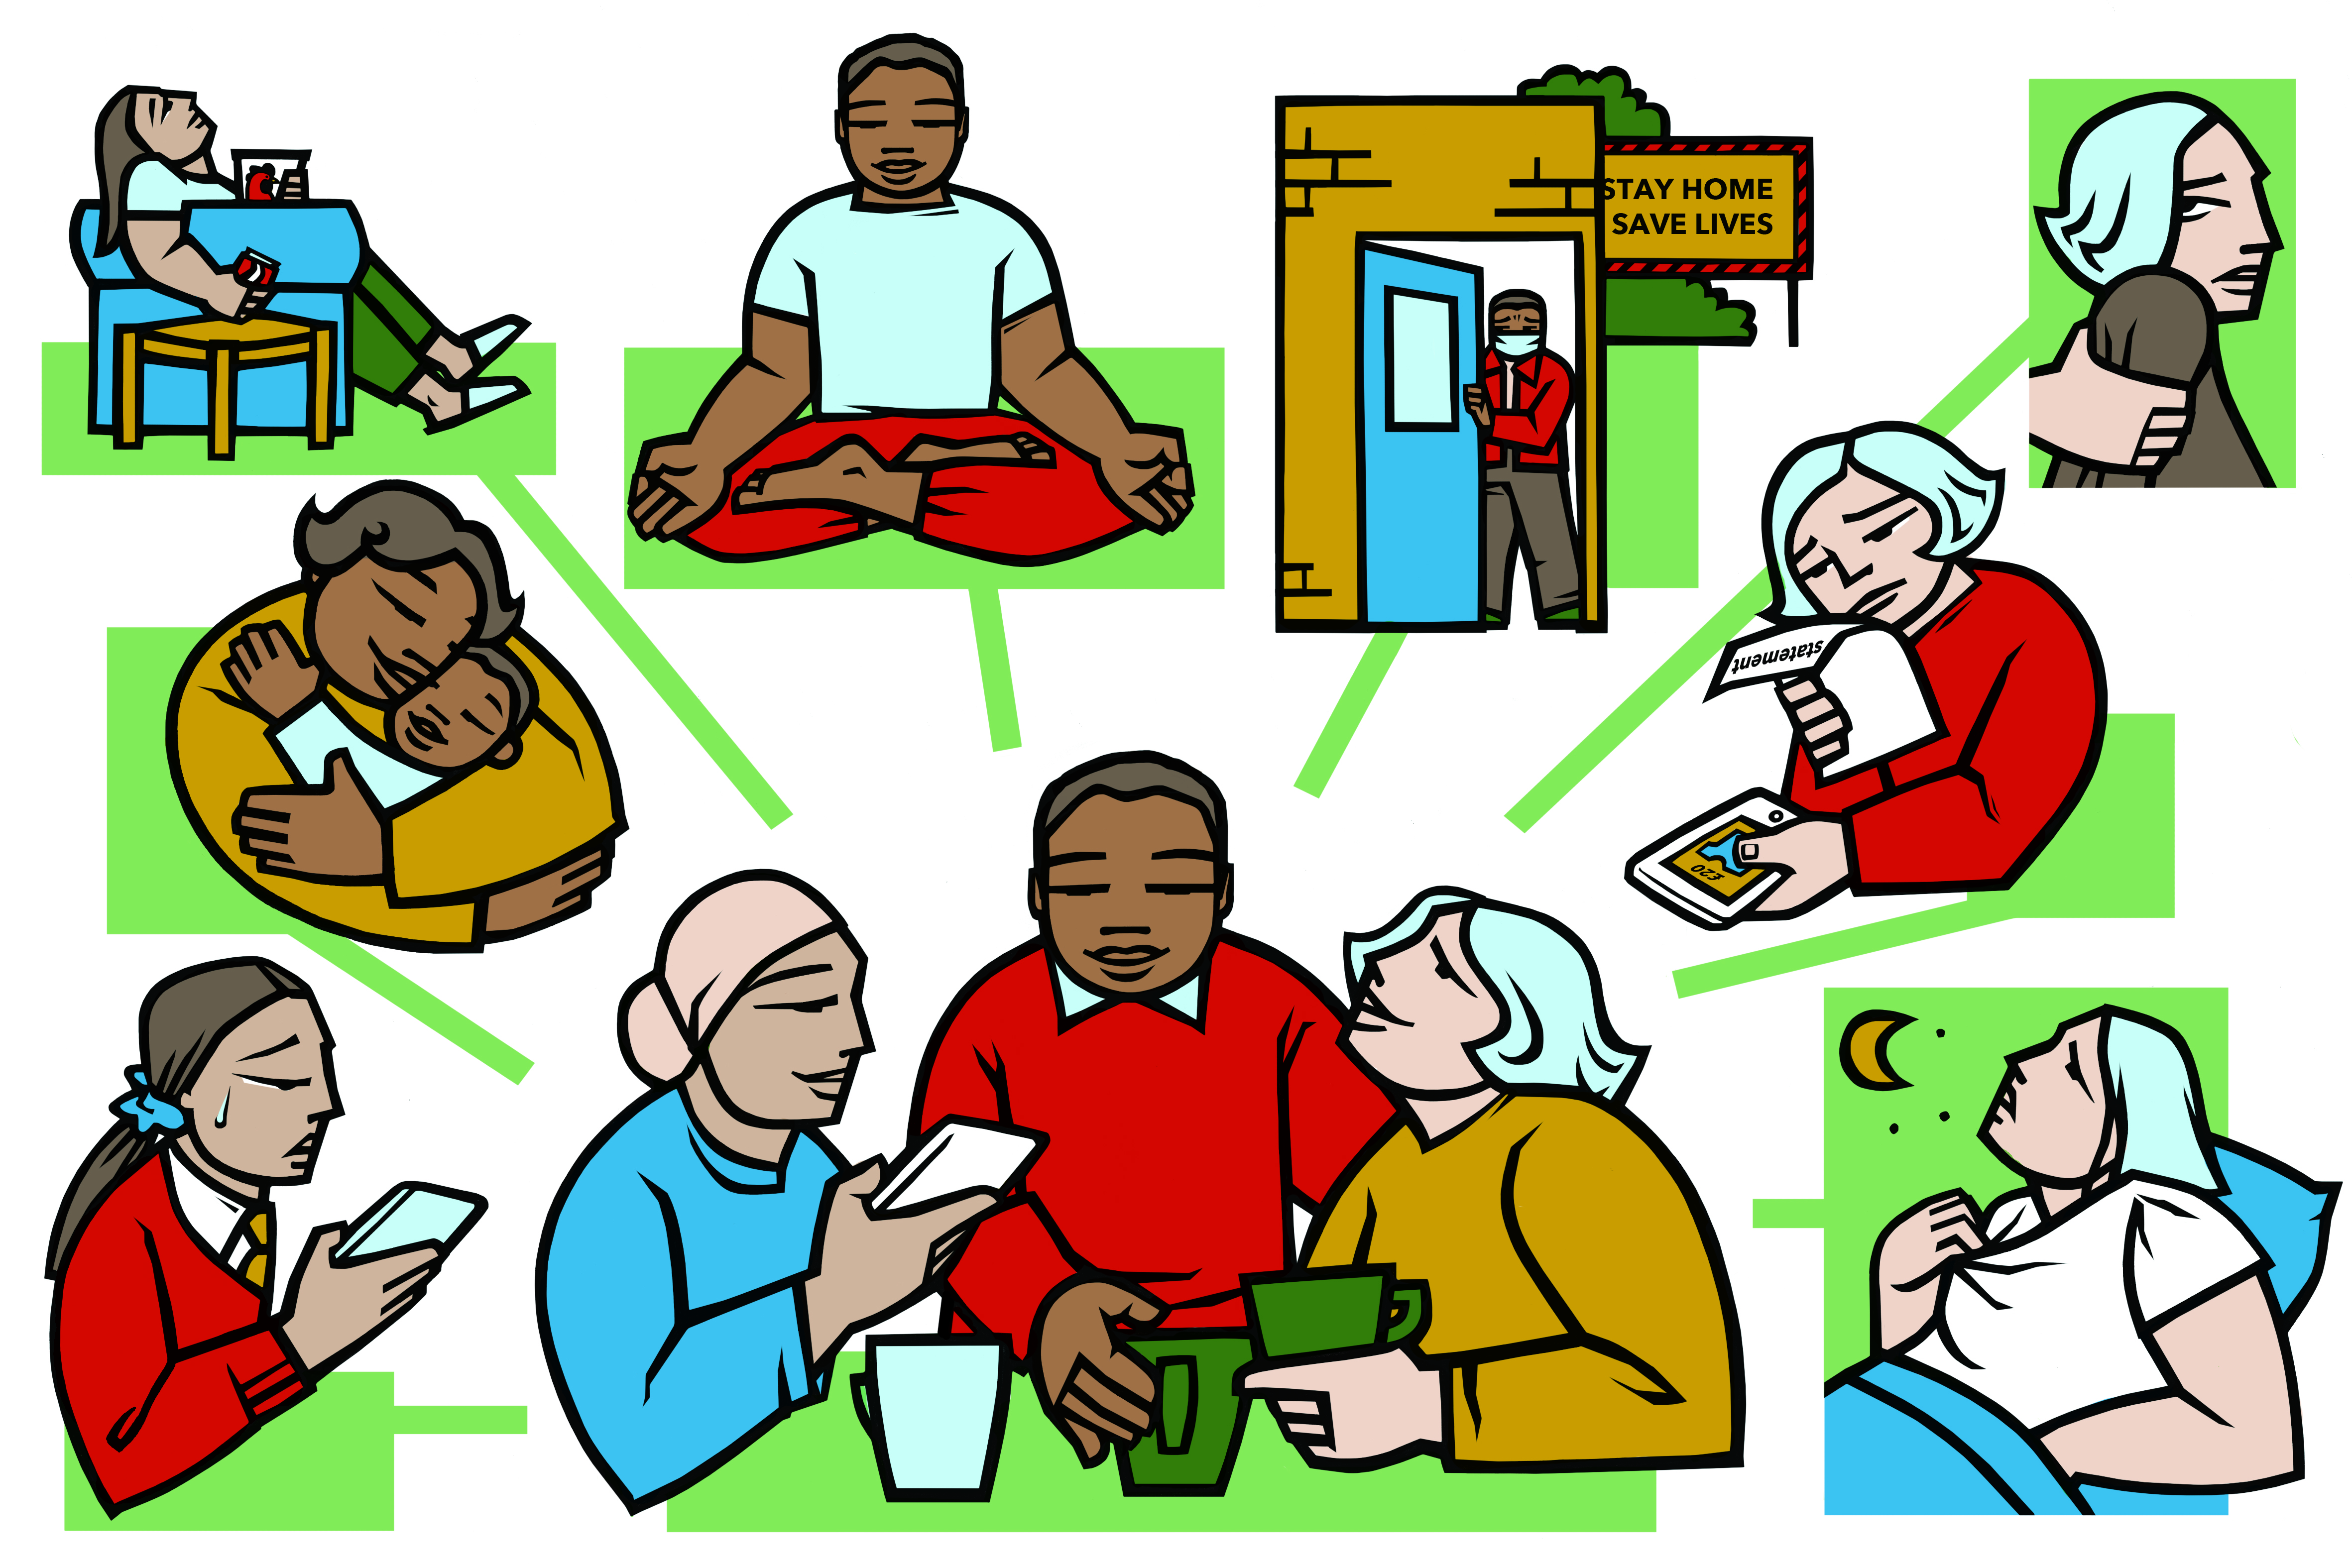 healthand-wellbeing-illustration.jpg